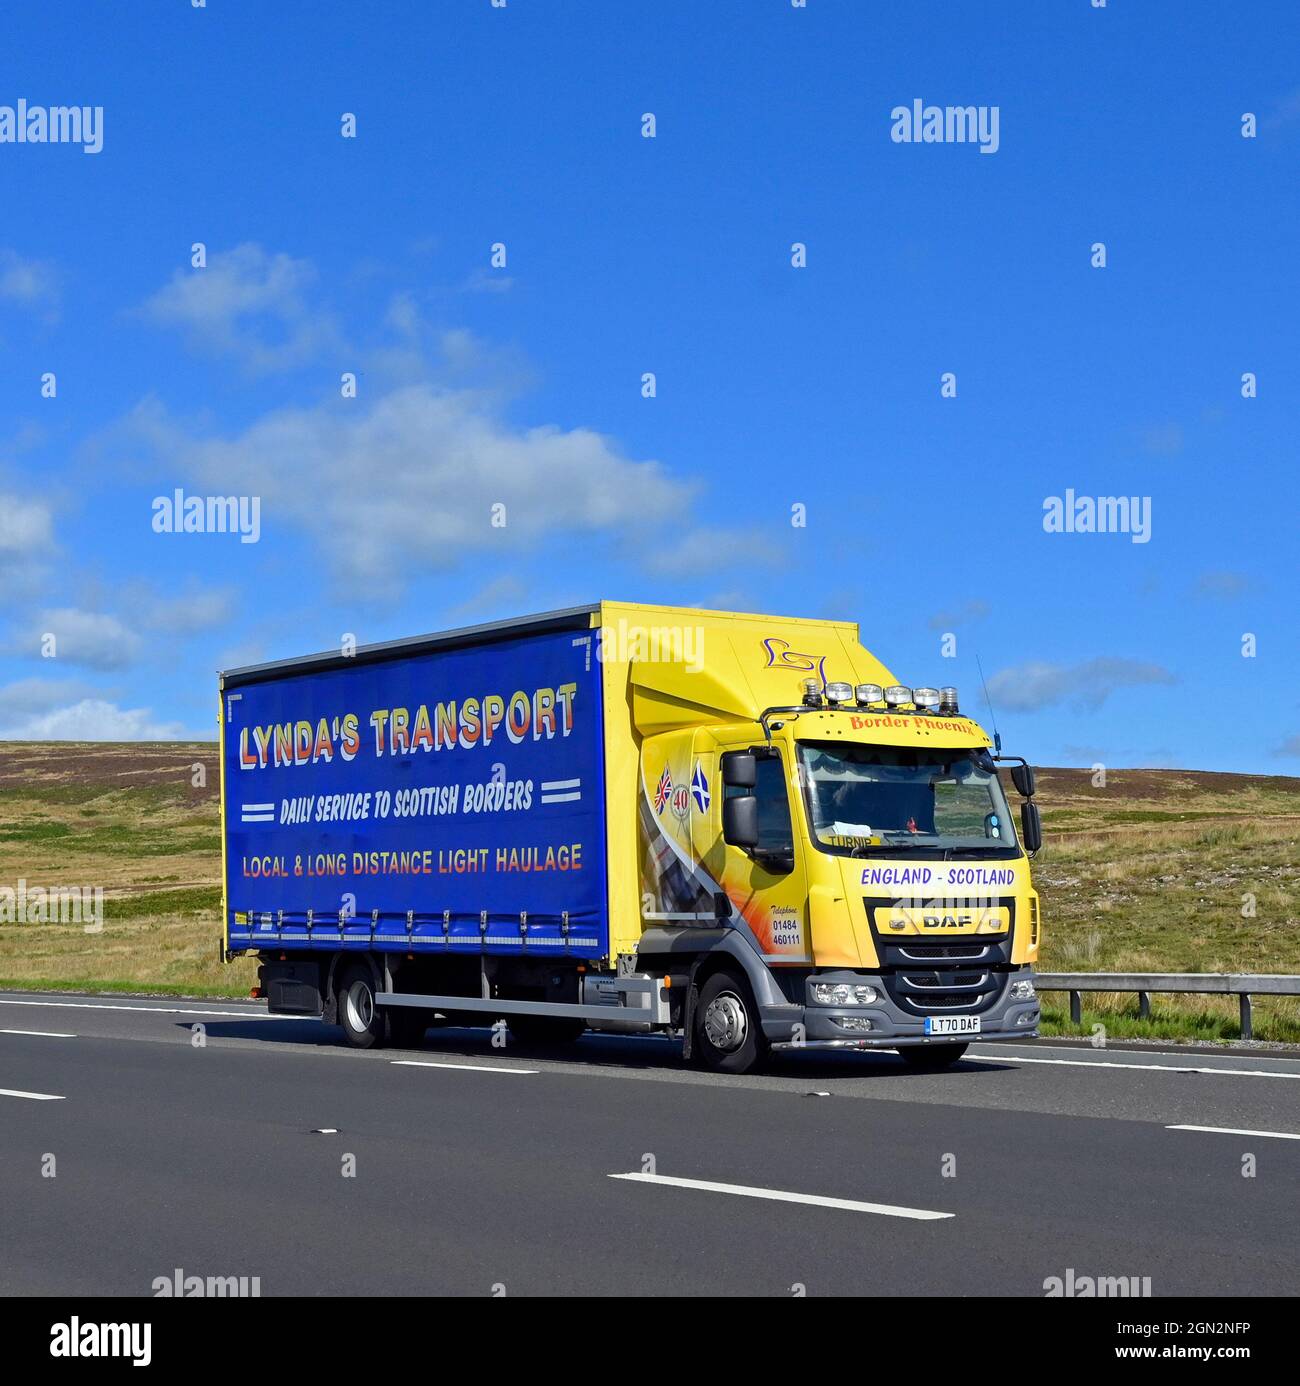 Güterwagen. Lyndas Transport. Täglicher Service nach Scottish Borders. Autobahn M6, Richtung Süden. Shap, Cumbria, England, Vereinigtes Königreich, Europa. Stockfoto